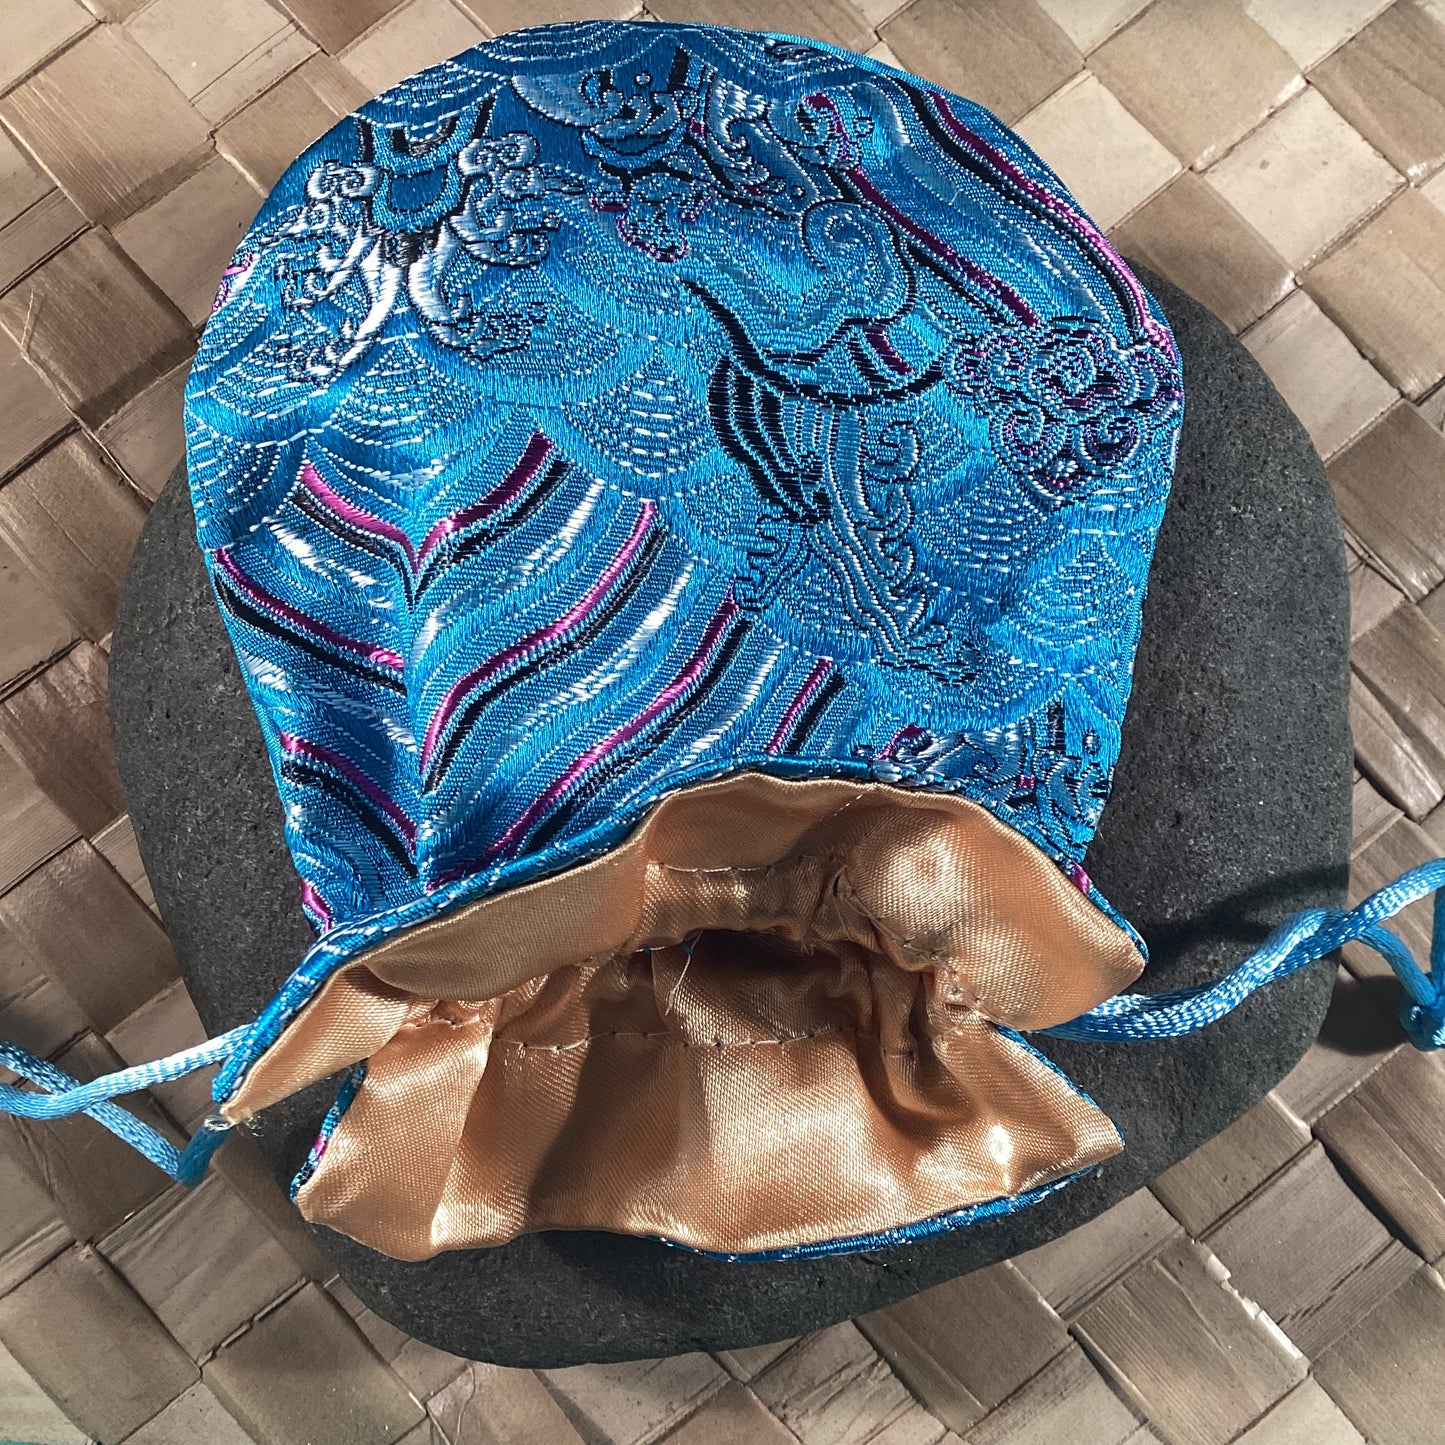 Blue Oriental silken storage and presentation pouch